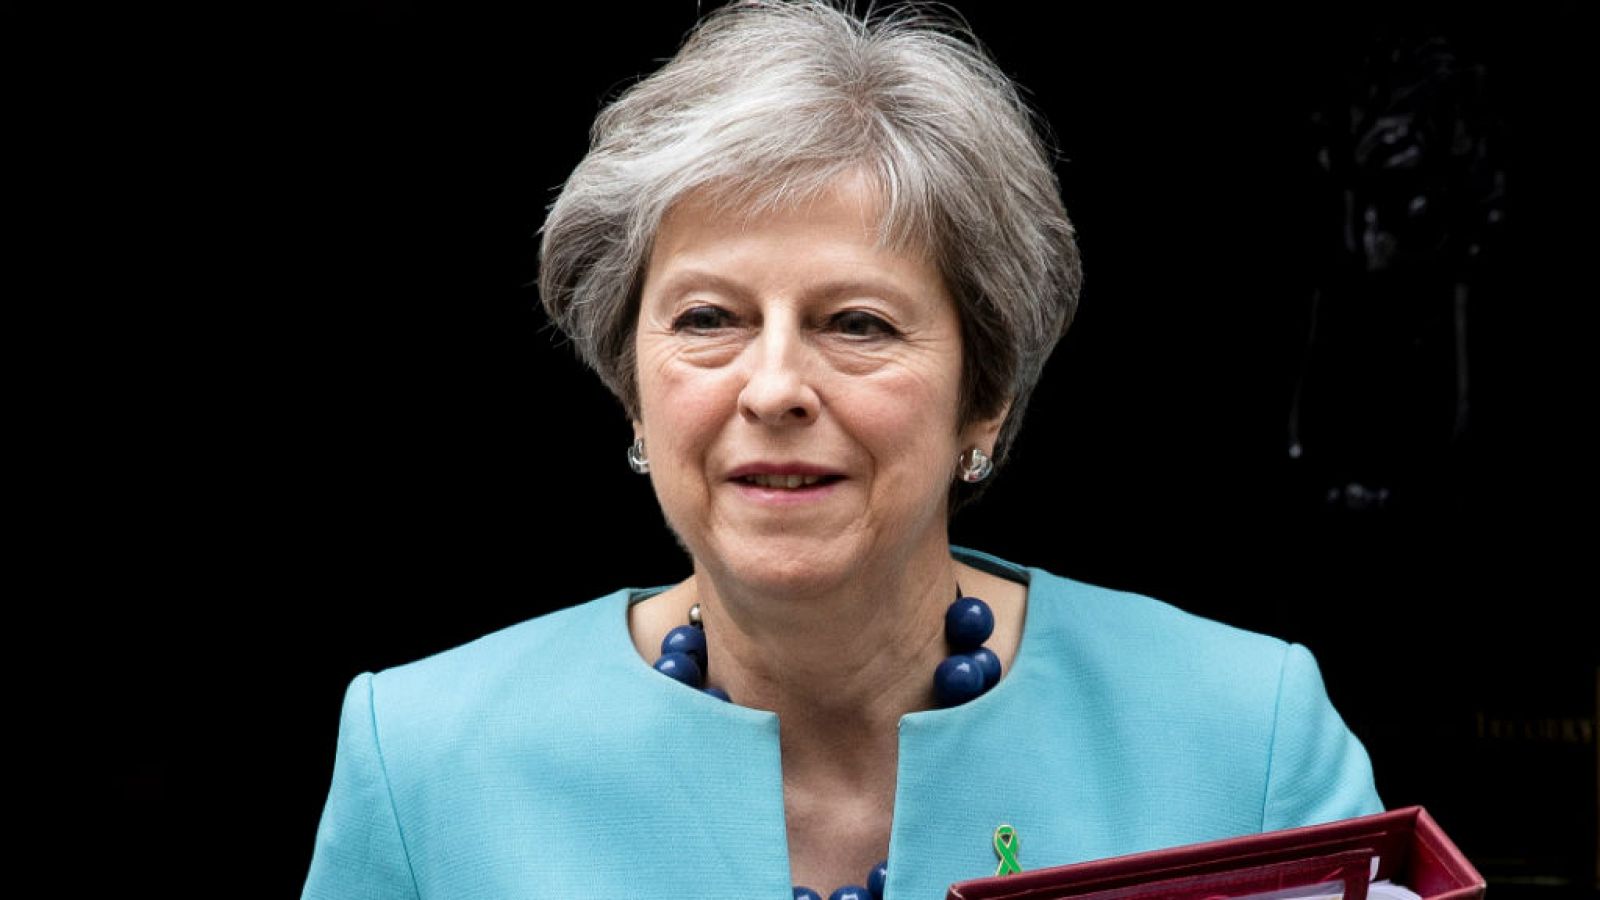  Boletines RNE - Theresa May fija la votación del Brexit el 14 de enero - escuchar ahora